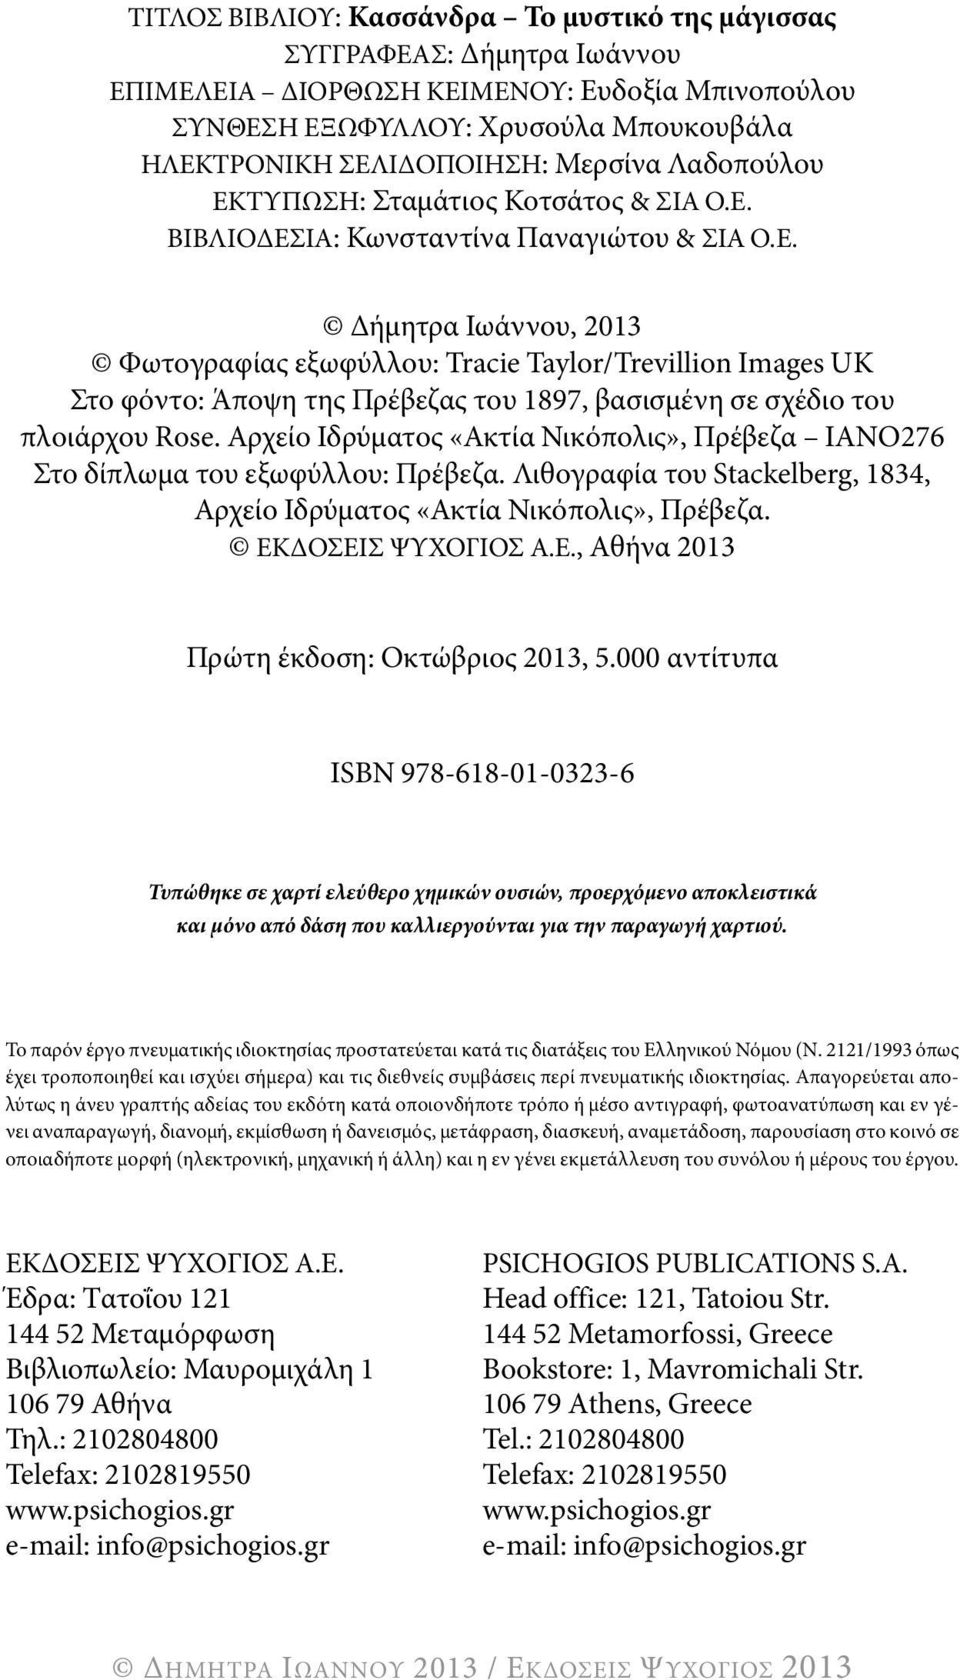 αρχείο Ιδρύματος «ακτία νικόπολις», πρέβεζα Ιανο276 στο δίπλωμα του εξωφύλλου: πρέβεζα. λιθογραφία του Stackelberg, 1834, αρχείο Ιδρύματος «ακτία νικόπολις», πρέβεζα. ΕκΔοσΕΙσ ΨυχογΙοσ α.ε., αθήνα 2013 πρώτη έκδοση: οκτώβριος 2013, 5.